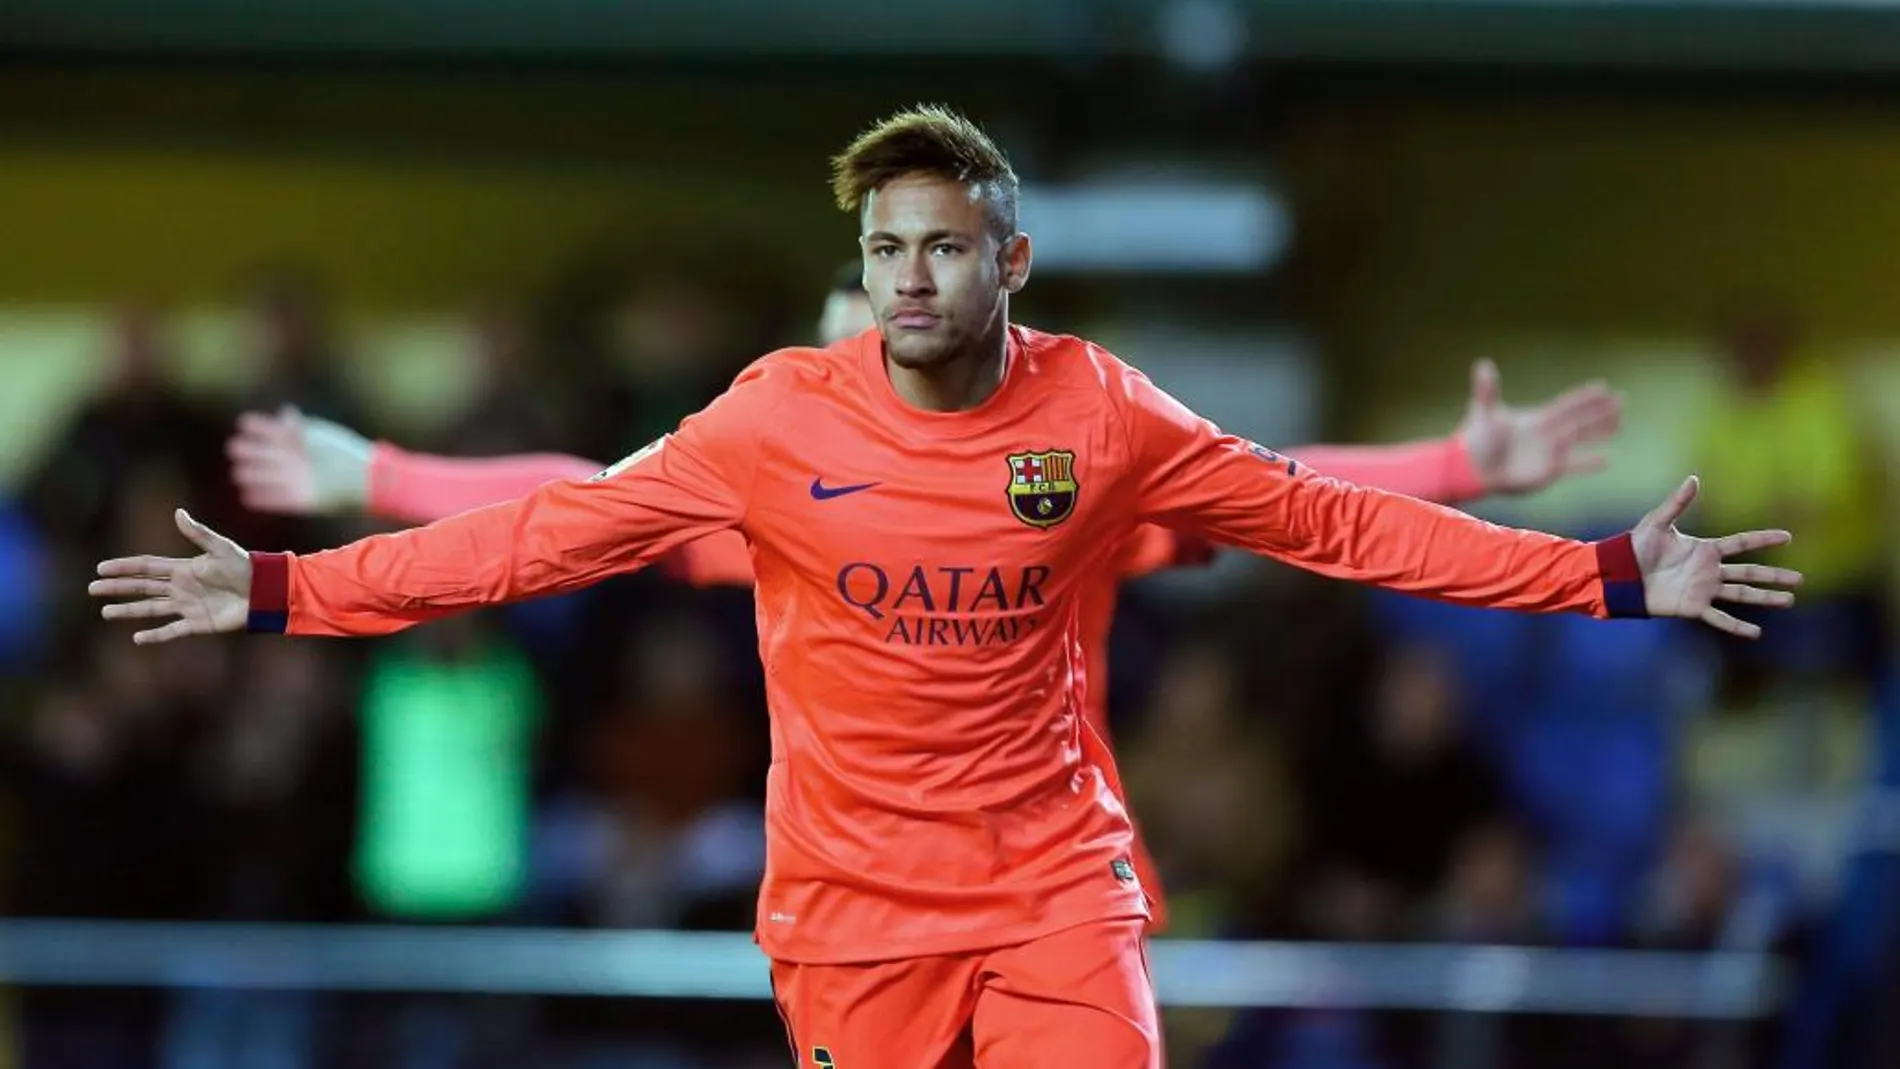 El delantero brasileño del Barcelona Neymar da Silva celebra la consecución del primer gol de su equipo ante el Villarreal